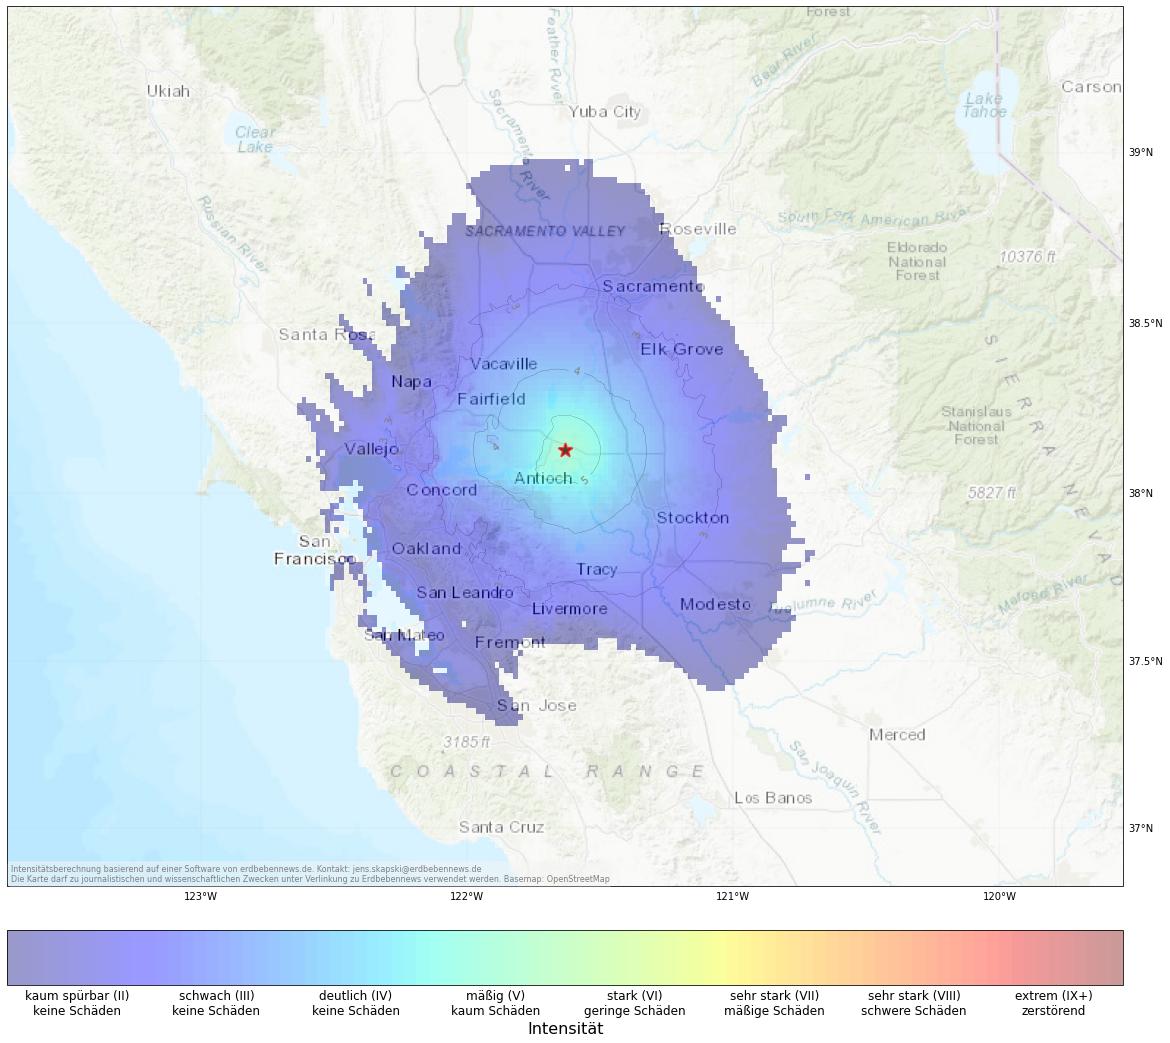 Berechnete Intensität (ShakeMap) des Erdbebens der Stärke 4.1 am 18. Oktober, 18:29 Uhr in USA